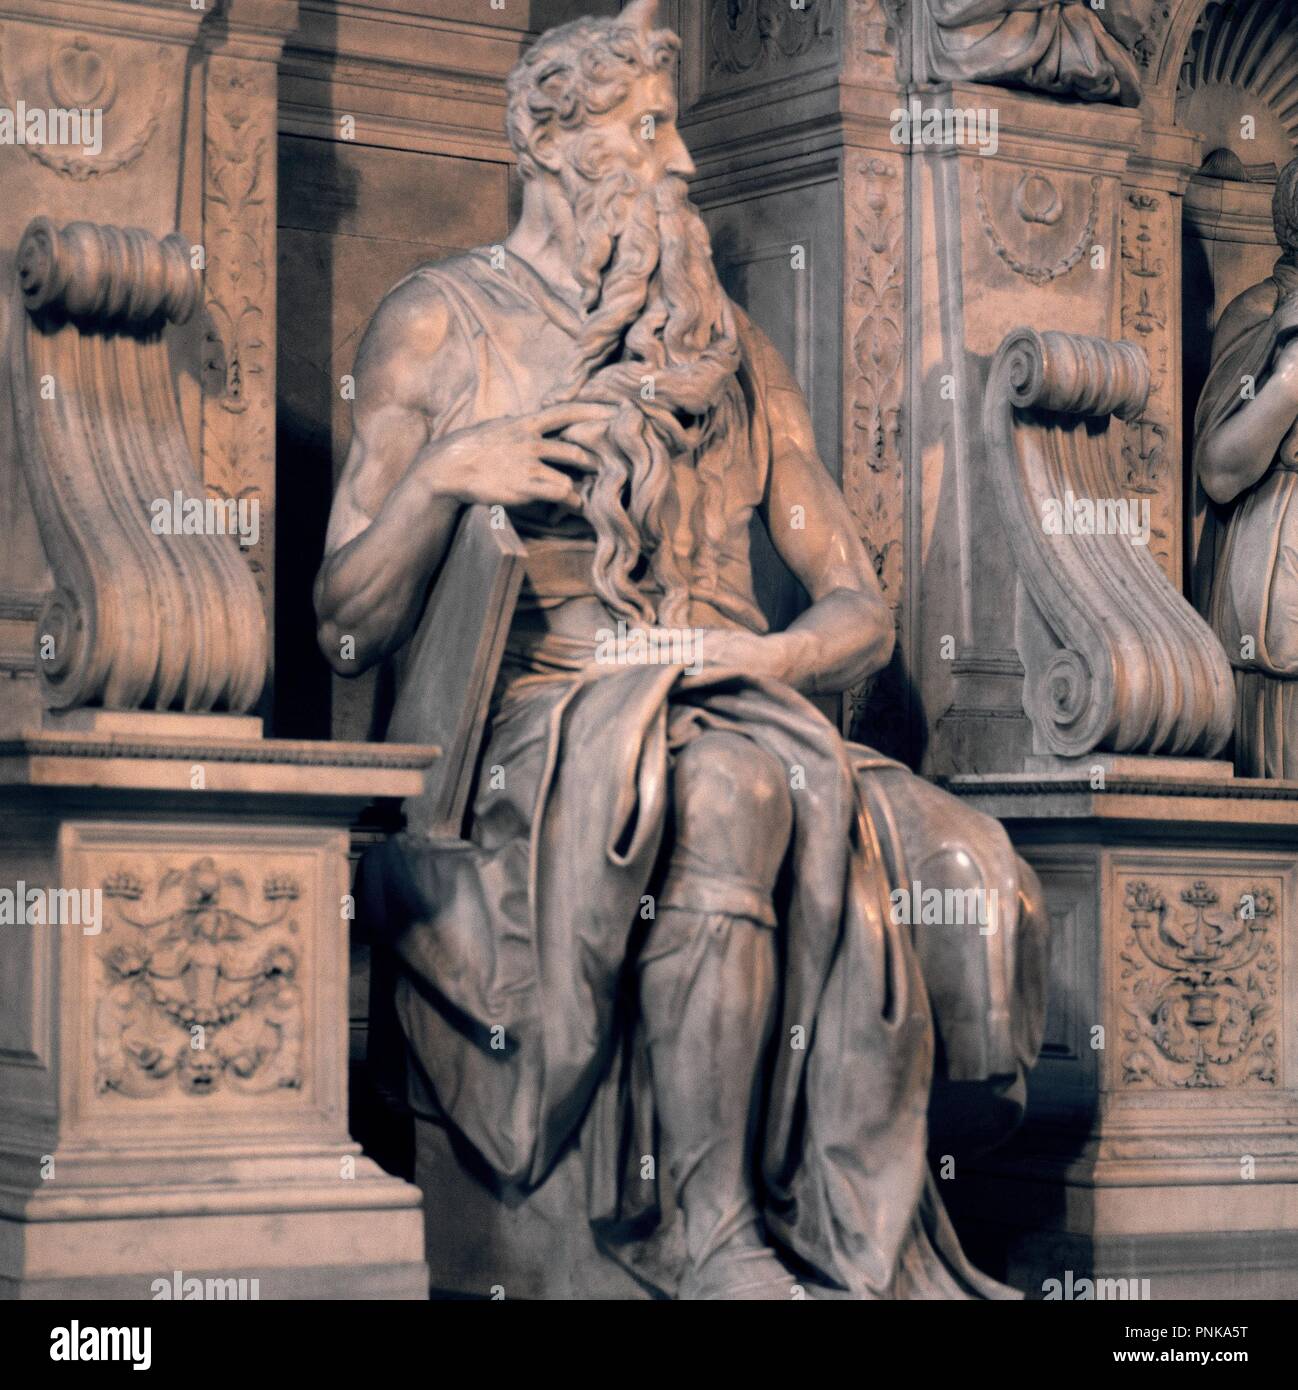 MOISES - 1513-1515 - ESCULTURA CENTRAL DE LA TUMBA DE JULIO II - RENACIMIENTO ITALIANO. Author: Michelangelo. Location: IGLESIA DE SAN PEDRO AD VINCULA. Rome. ITALIA. Stock Photo